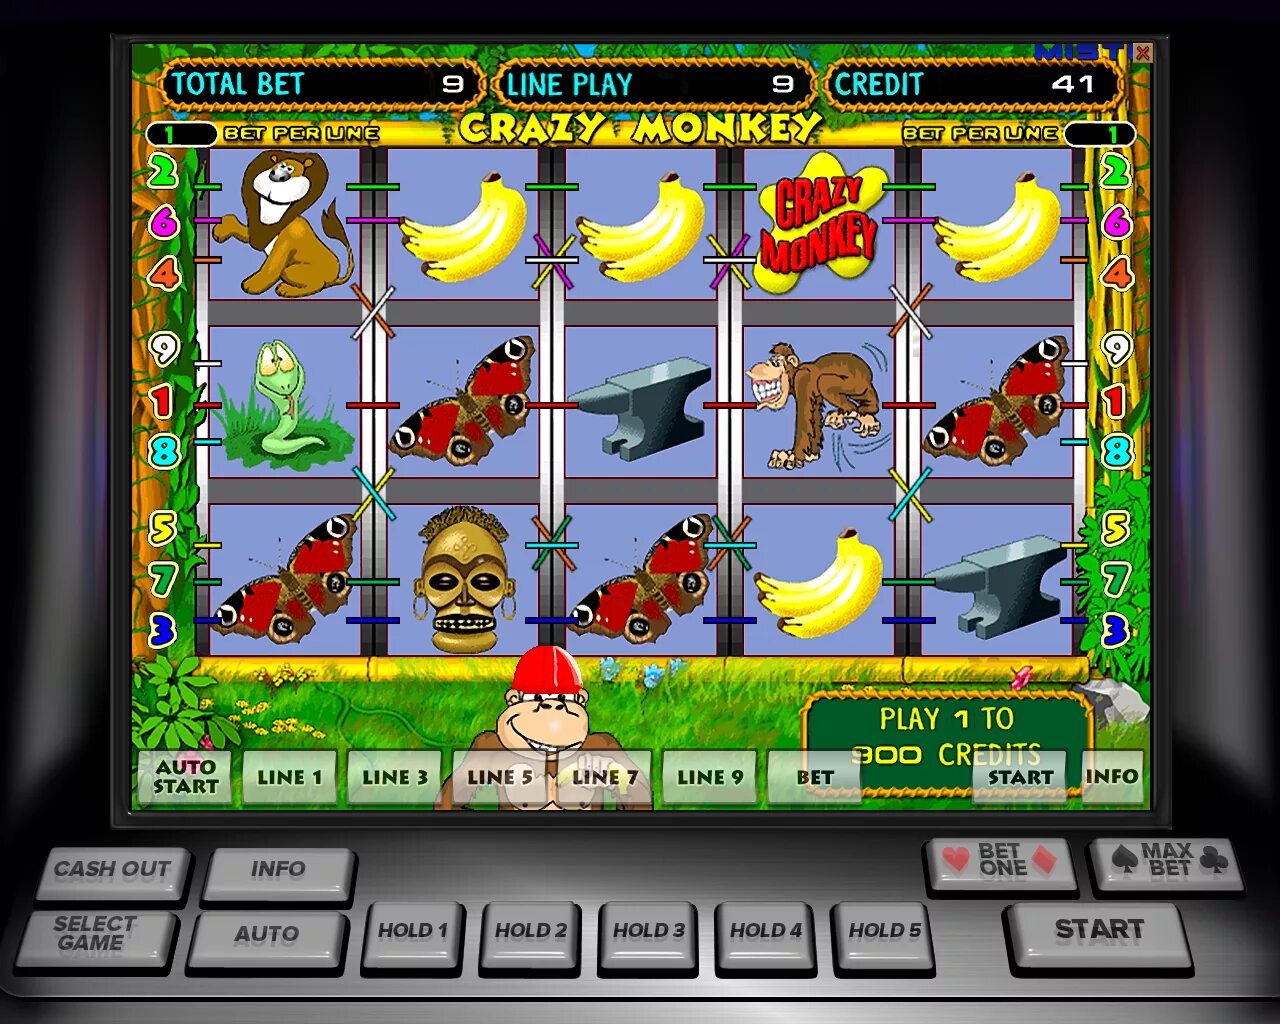 Игры азартные автоматы обезьянки. Эмулятор игровых автоматов обезьянки. Эмуляторы игровых автоматов 777 цирк. Эмулятор игрового автомата Crazy Monkey. Эмуляторы игровых автоматов казино.